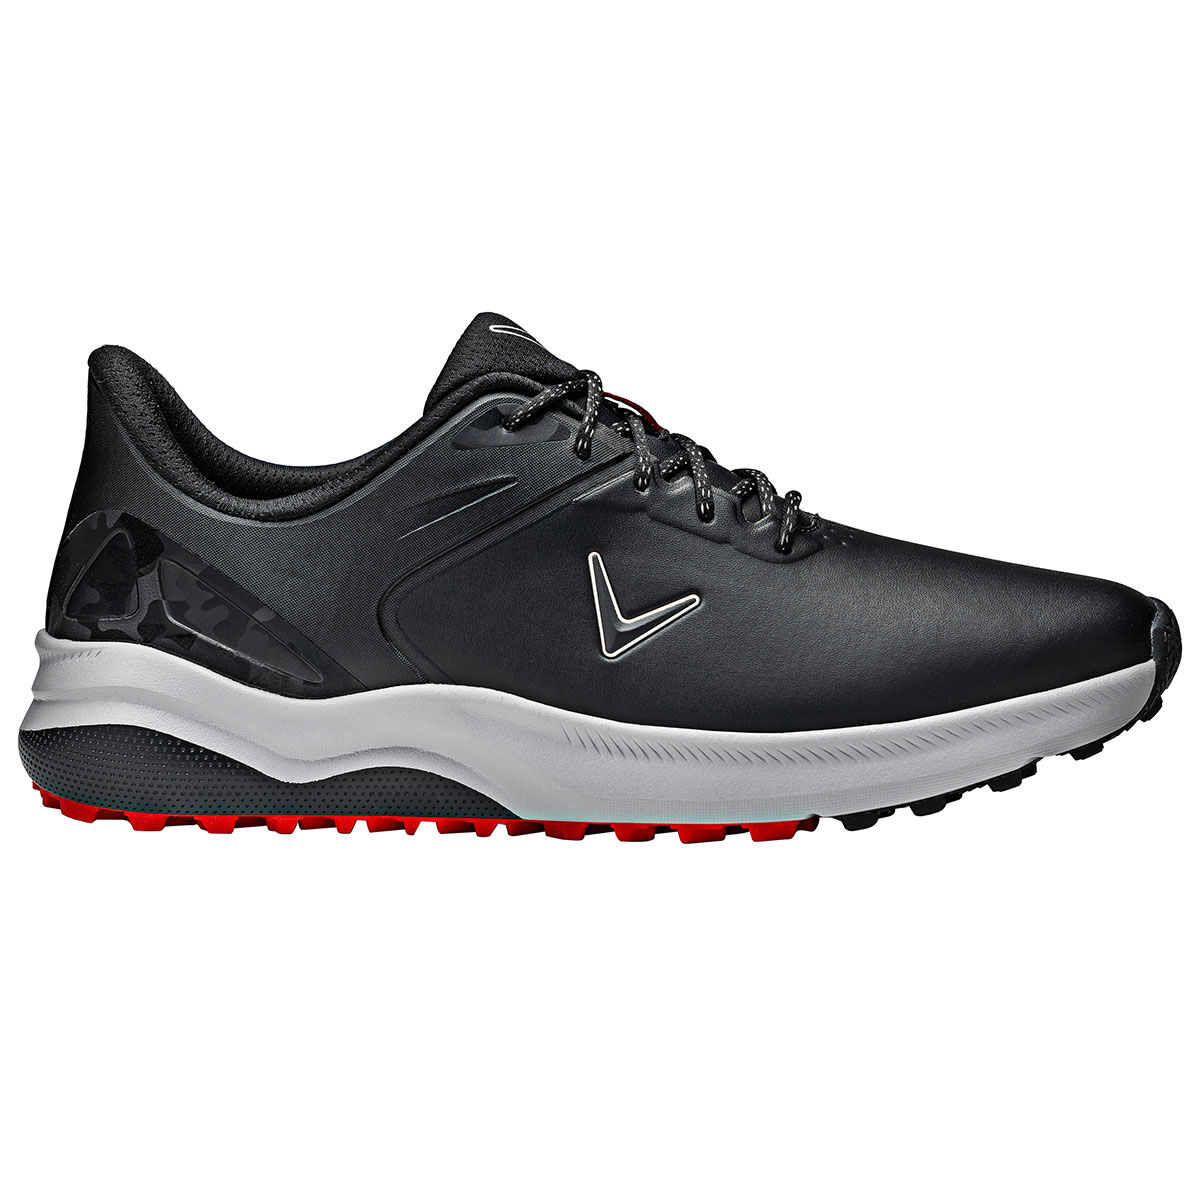 Callaway Golf Mens Black Waterproof Lazer Spikeless Golf Shoes, Size: 8 | American Golf von Callaway Golf